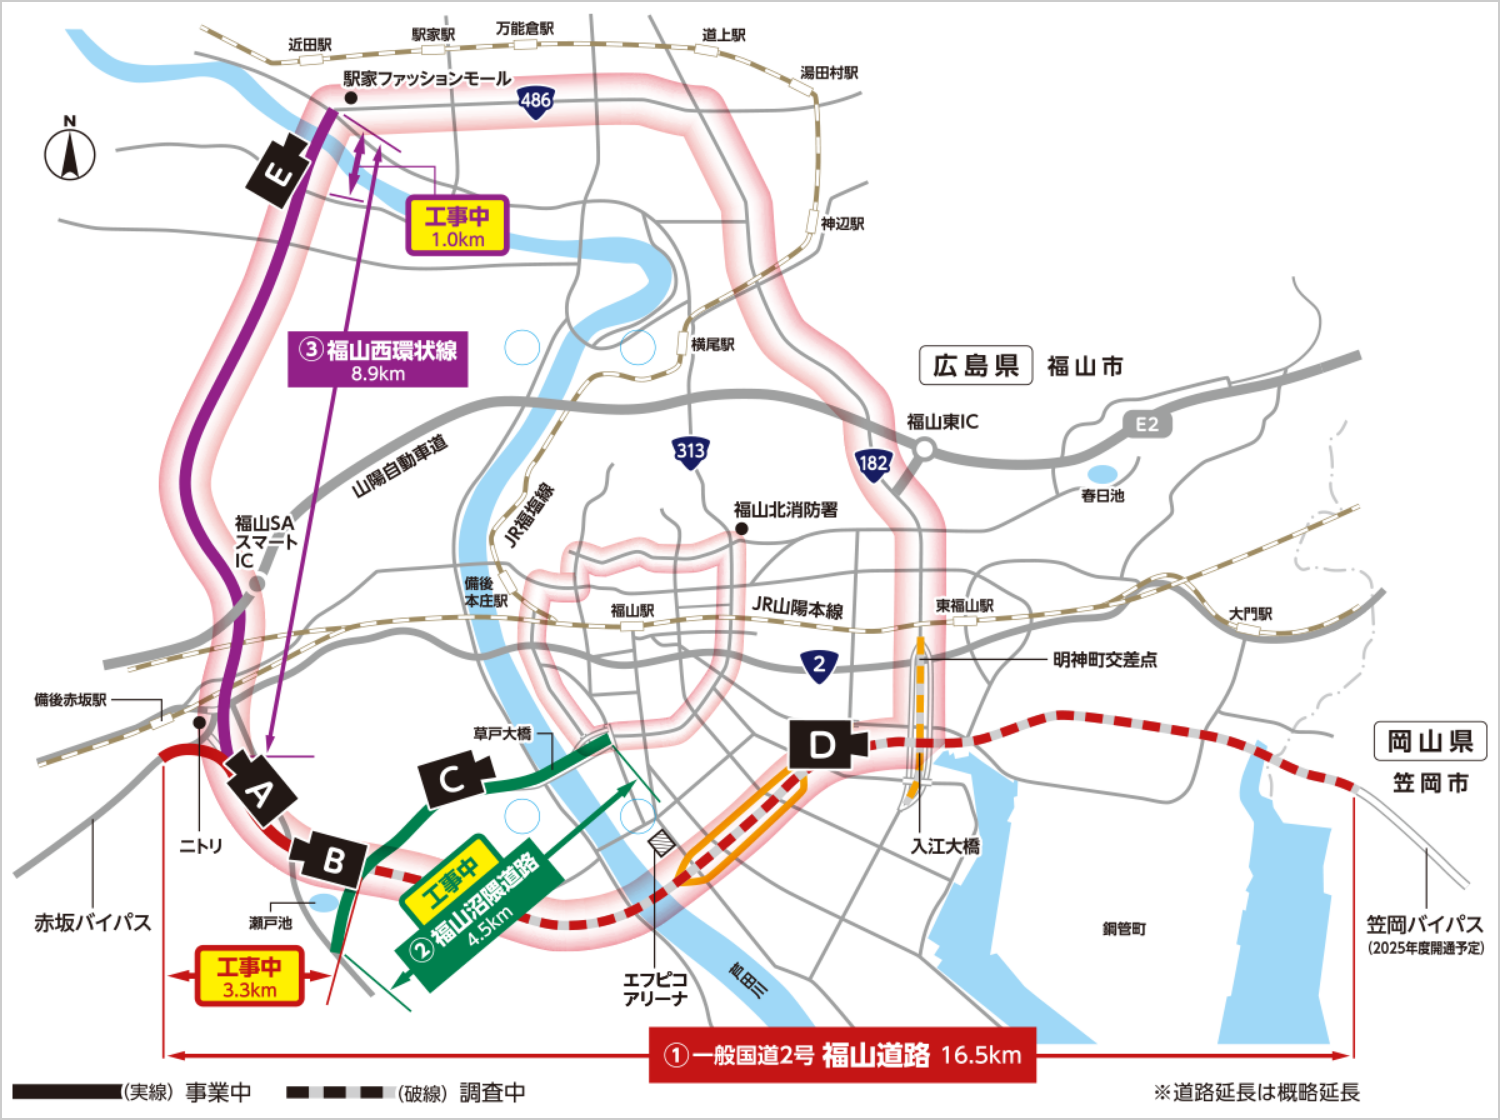 「福山道路」「福山沼隈道路」「福山西環状線」の3路線の地図